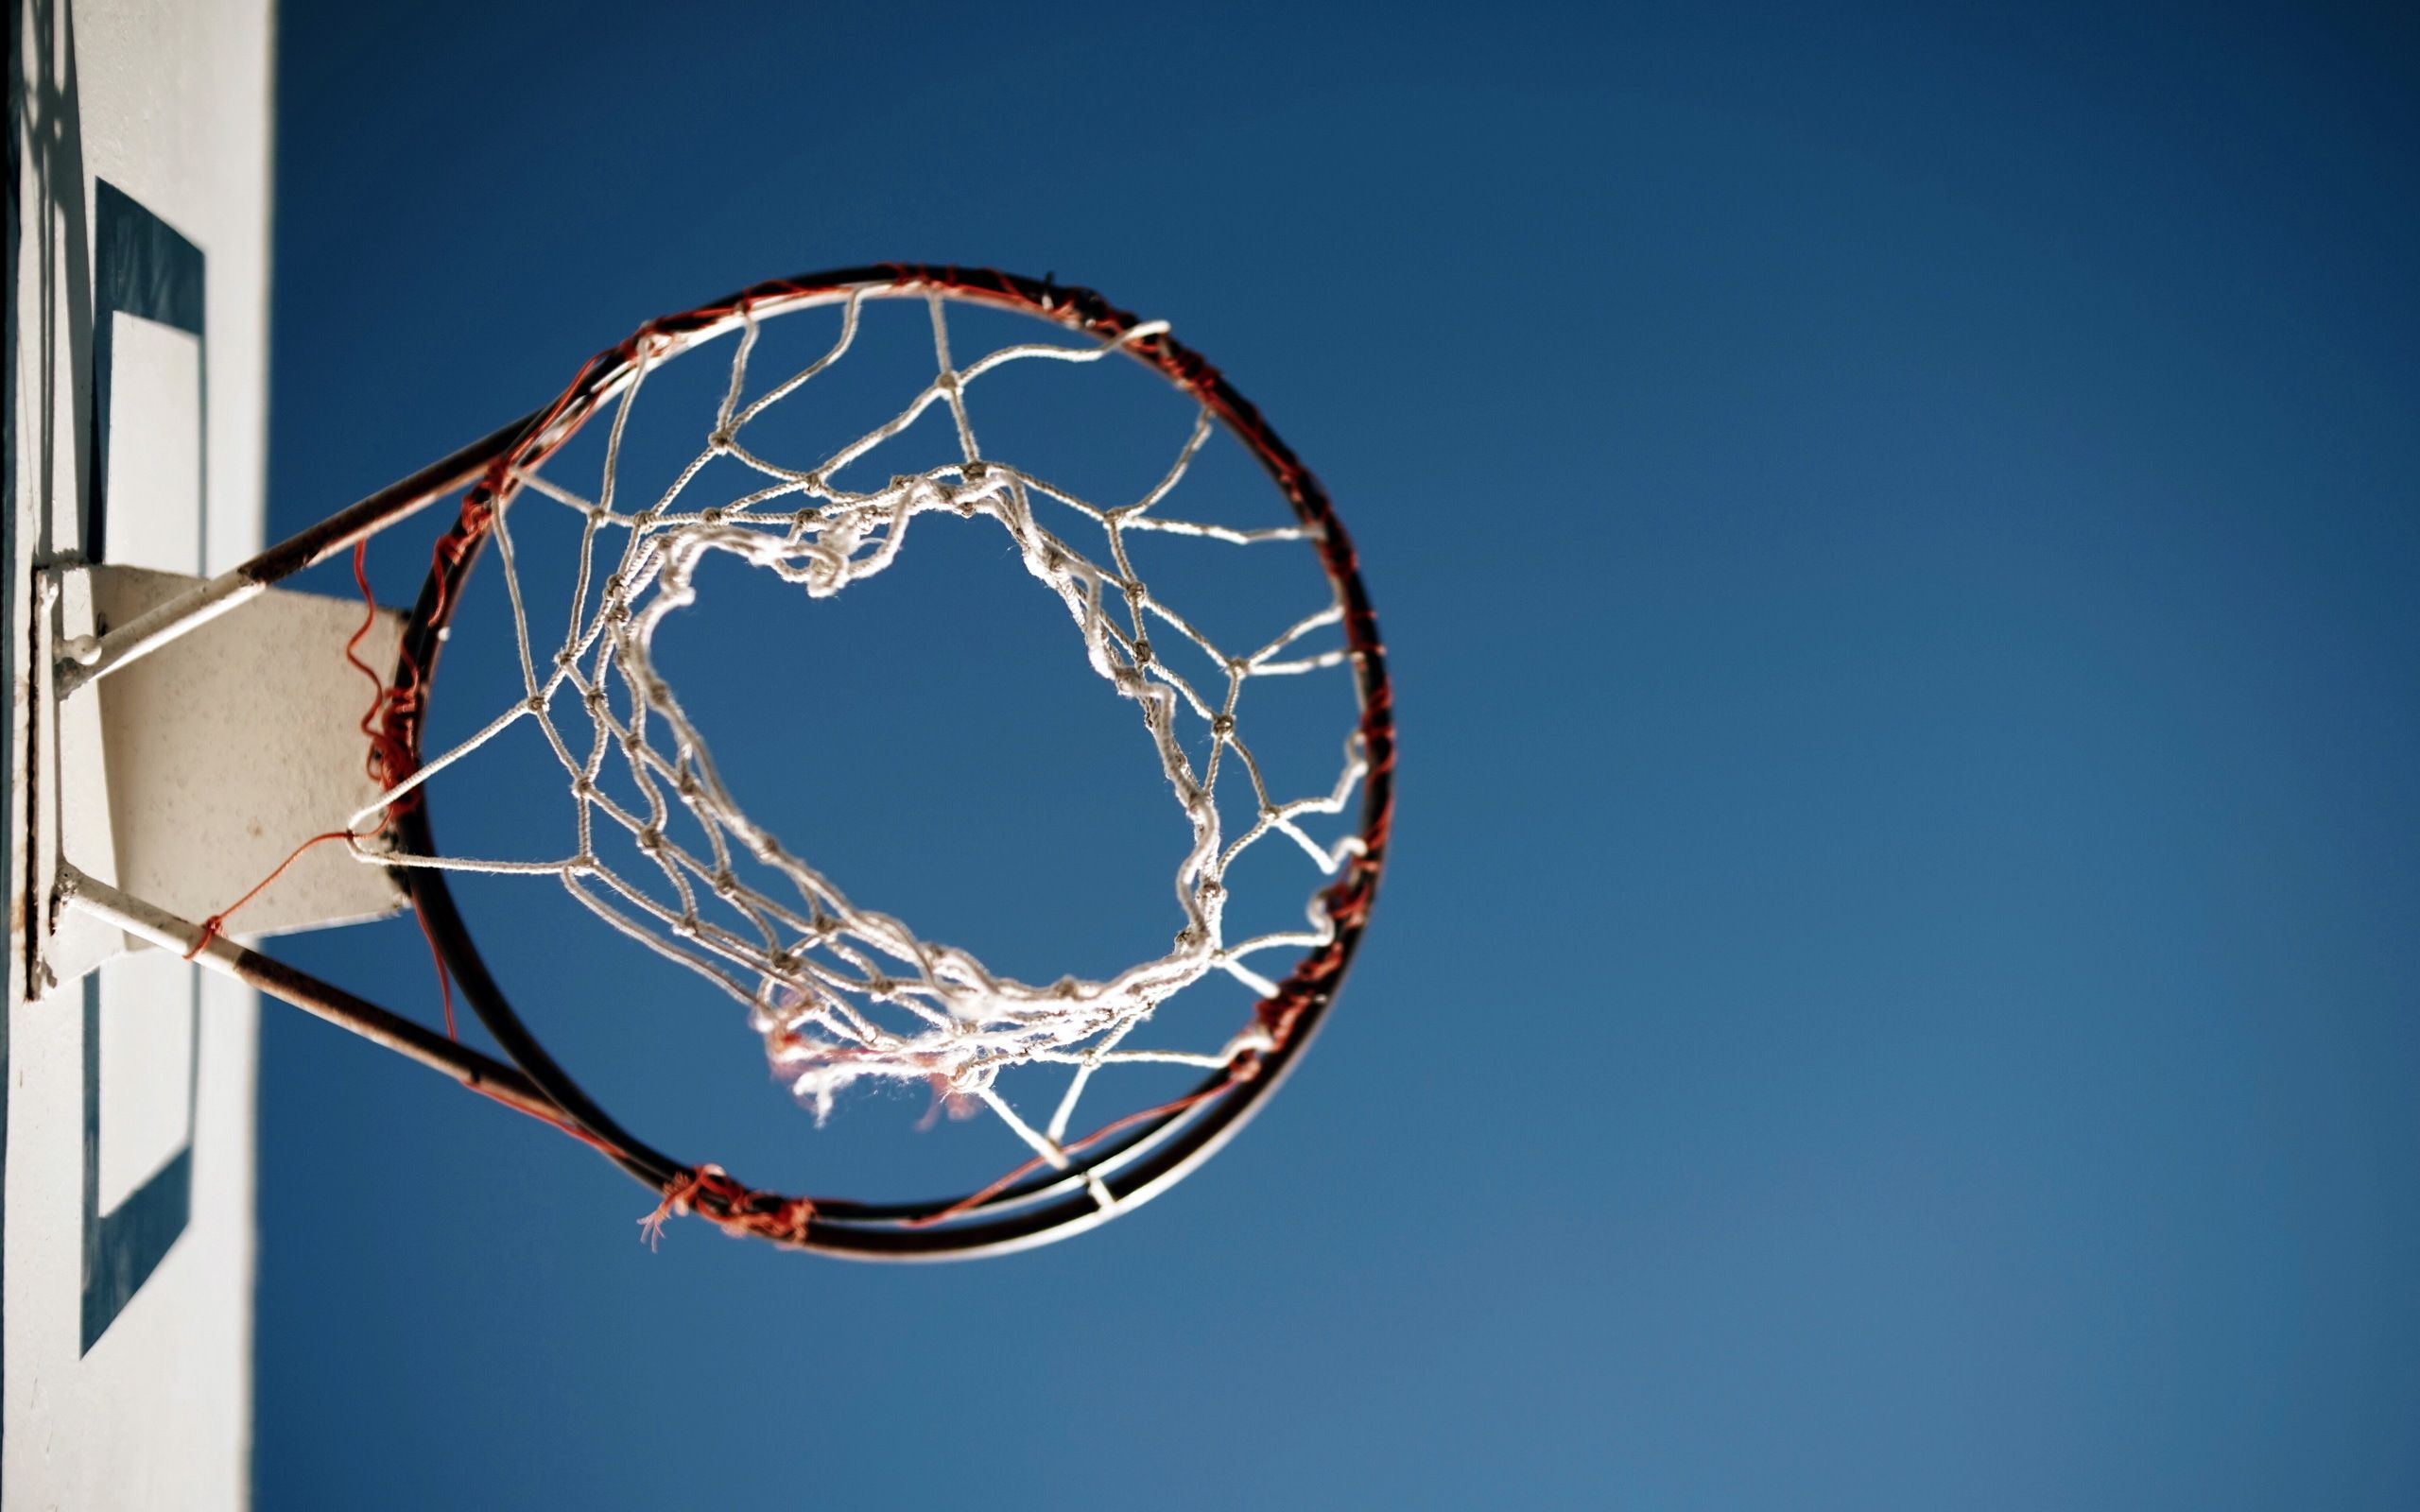 دانلود عکس توپ بسکتبال با کیفیت بالا برای فتوشاپ